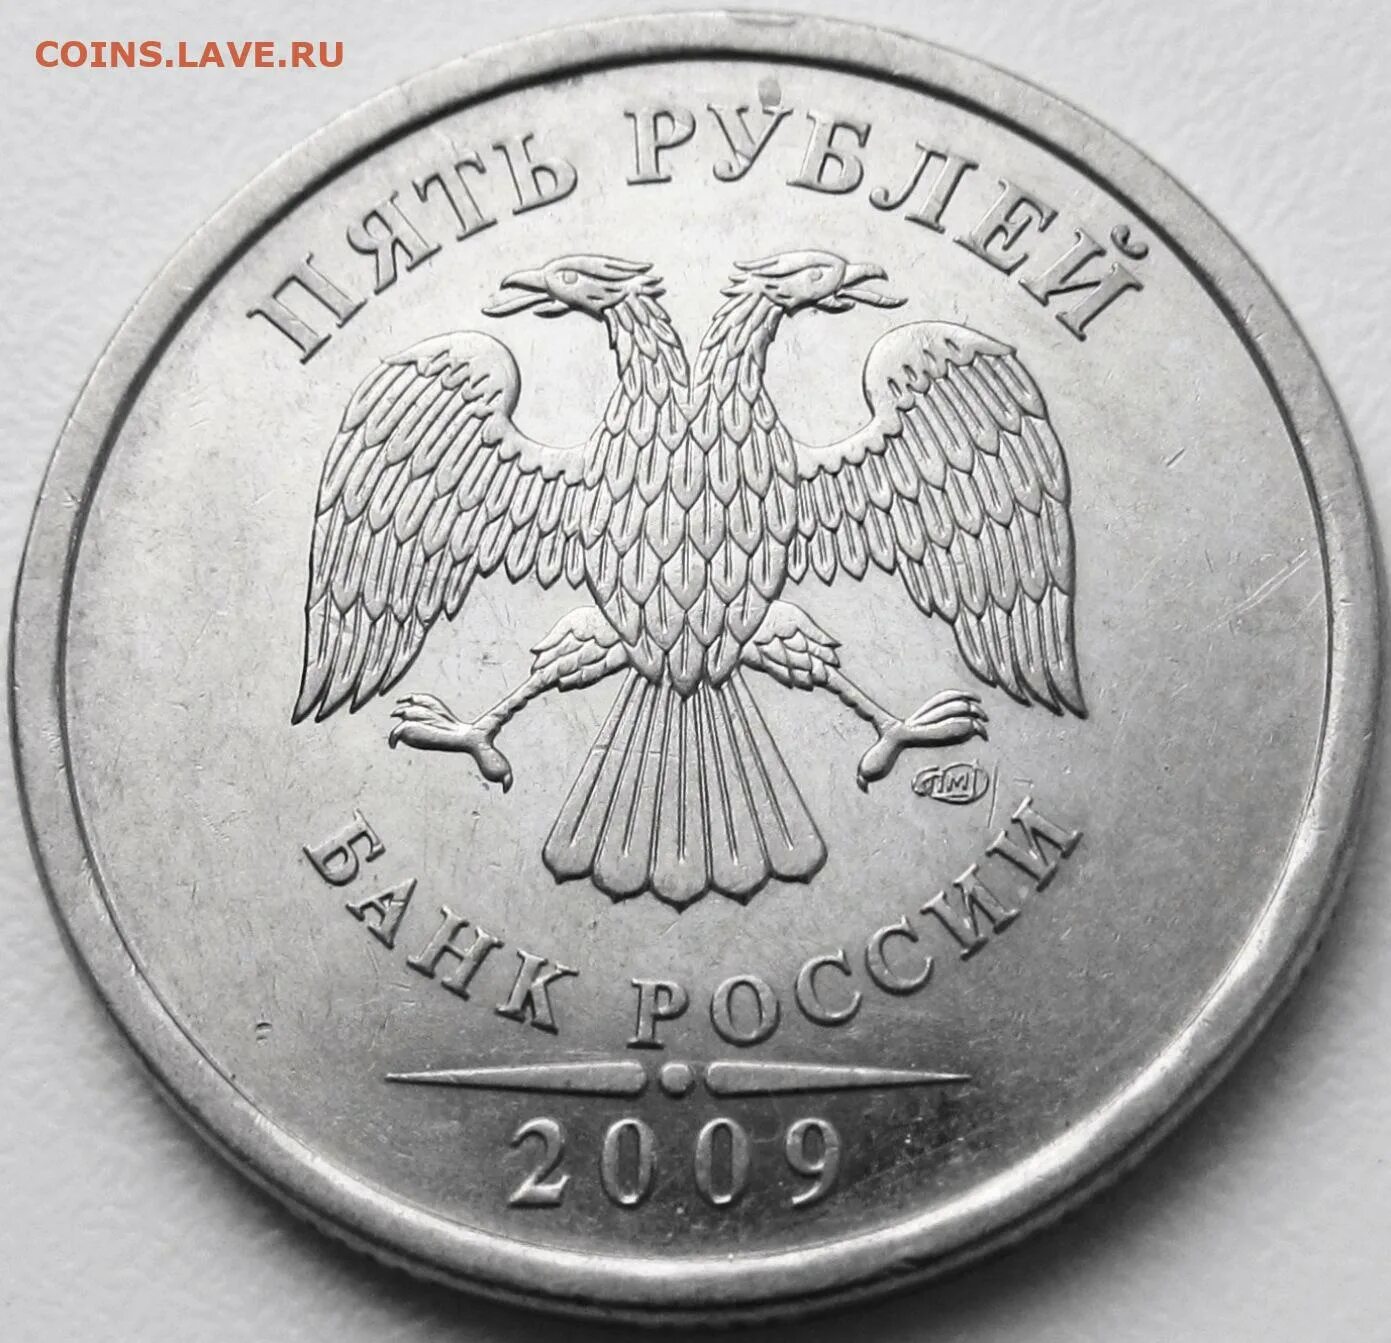 5 рублей 2009 спмд. 2020 Год 5 рублей СПМД. 5 Рублей 2009 СПМД Аверс г. Вес 5 рублевой монеты 2020. 30000 Рублей 2009.